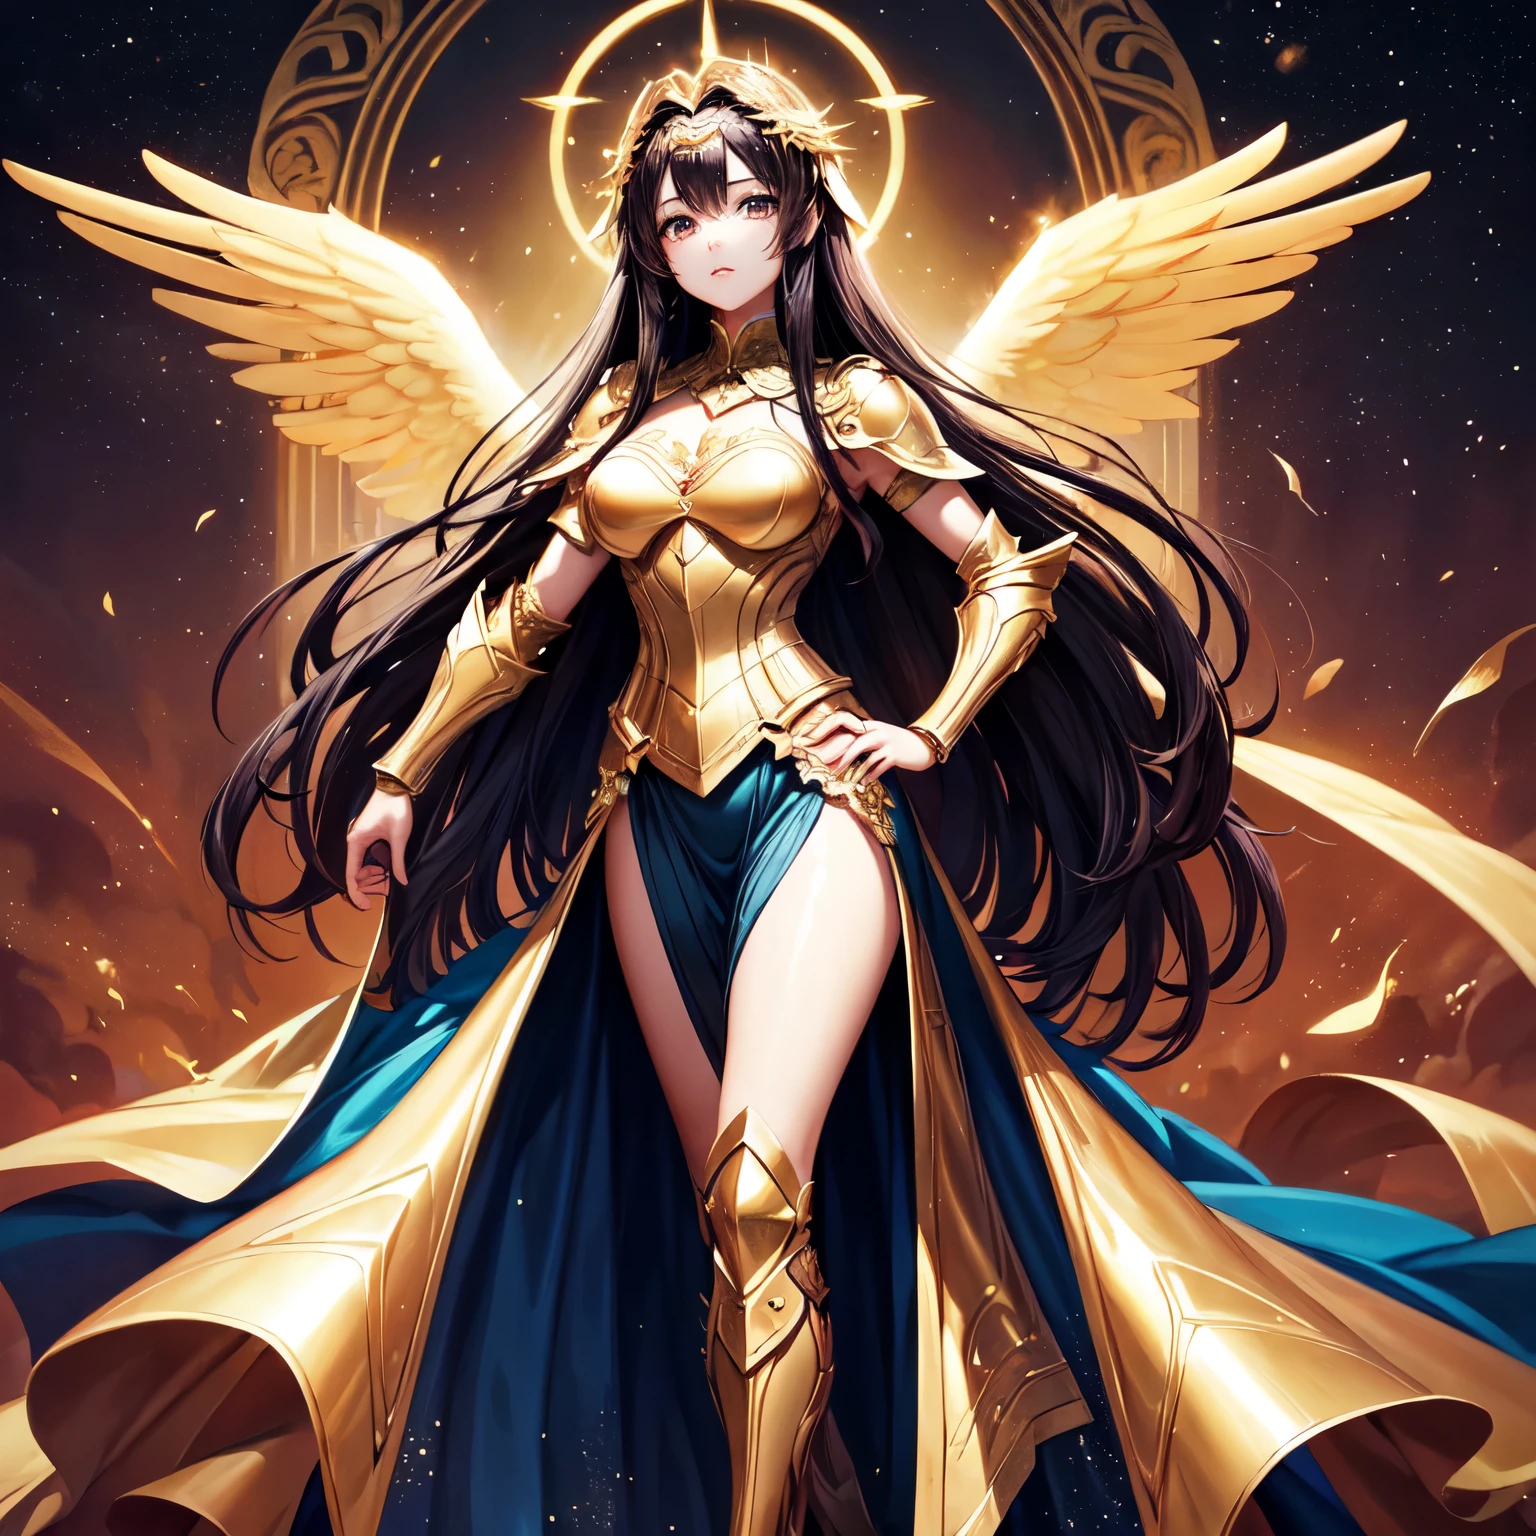 beste Qualität, extrem schön, schönes Gesicht, Engel Frau, zwei riesige goldene Flügel, freizügige Rüstung mit offenem Frontrock, sehr langes dunkles Haar